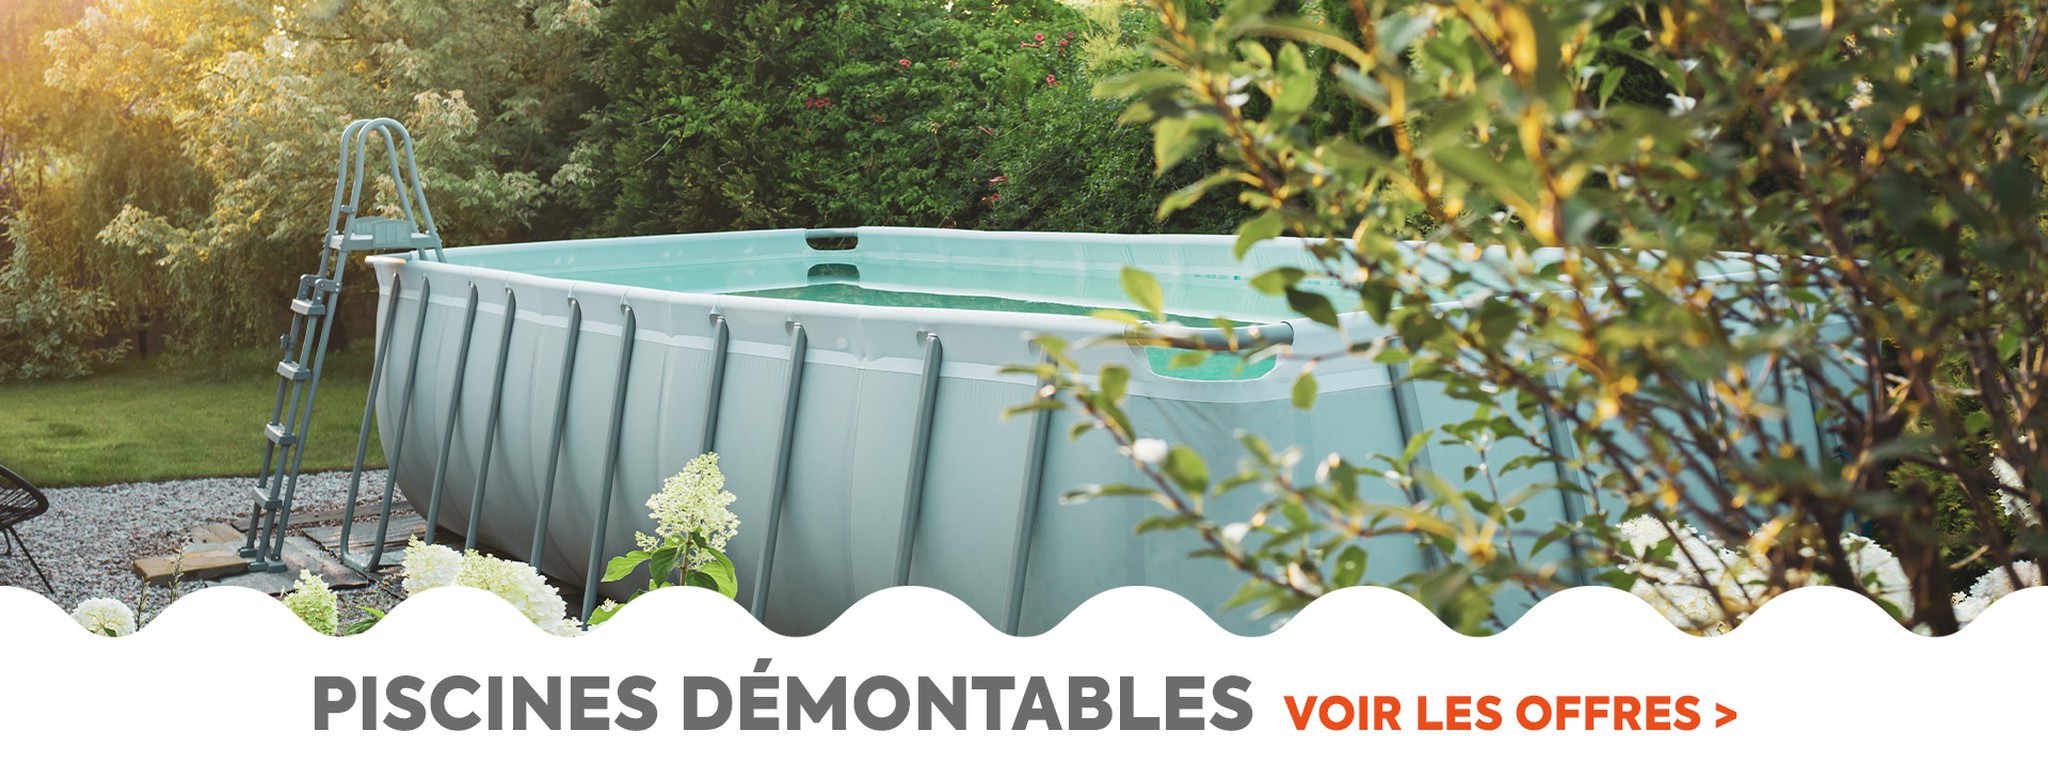 Découvrez notre gamme de piscines et profitez de votre jardin cet été.